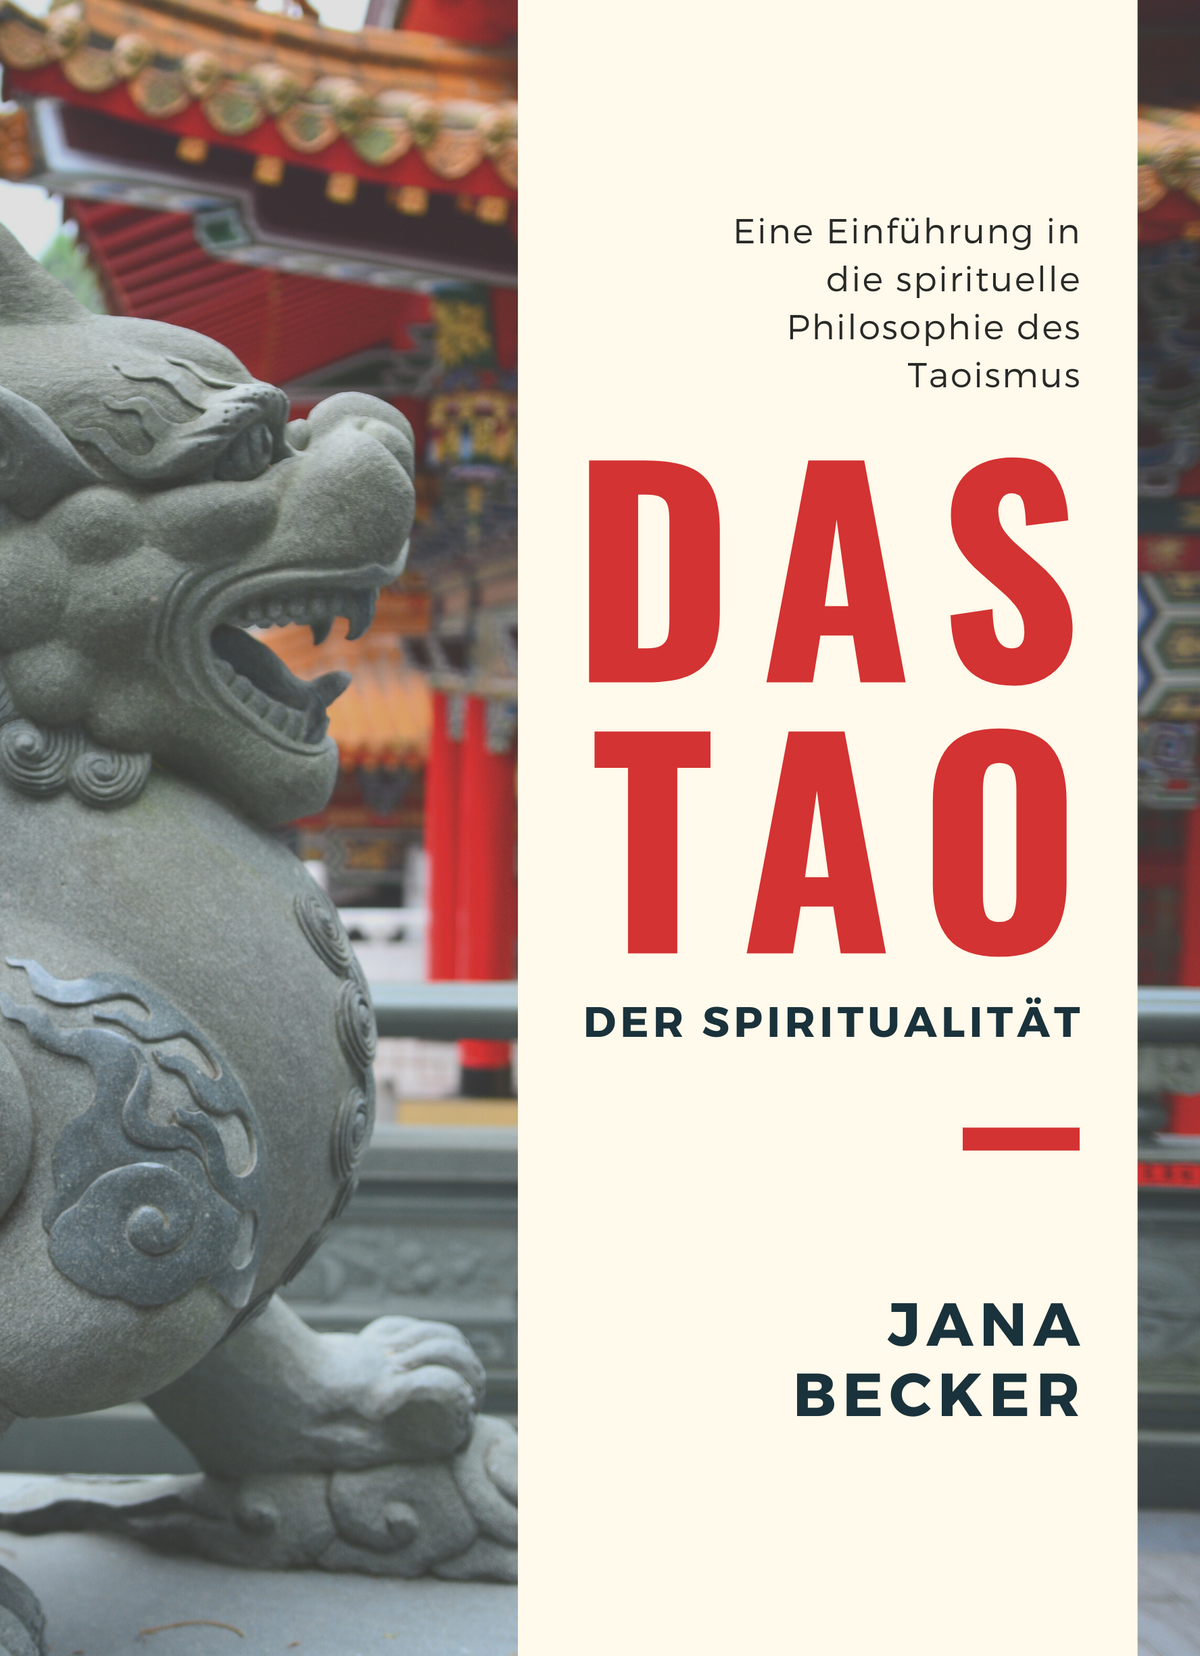 Das Tao der Spiritualität